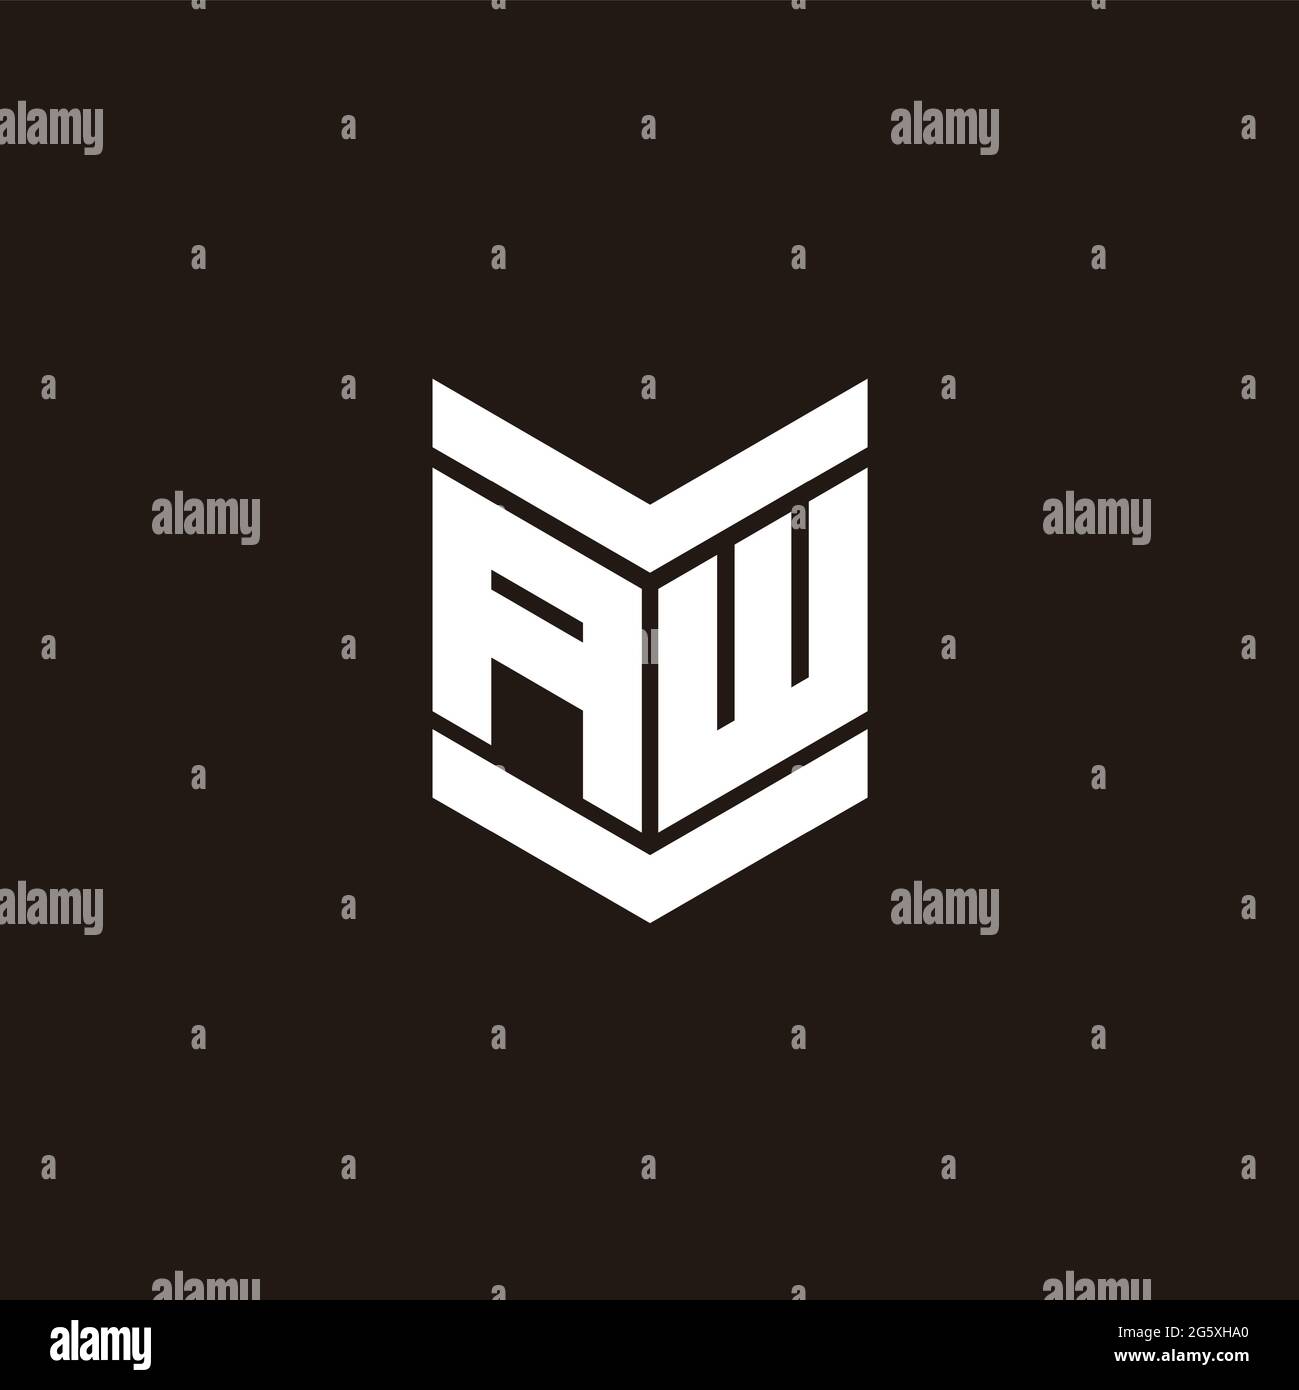 Logo alphabet monogram with emblem style isolated on black background ...